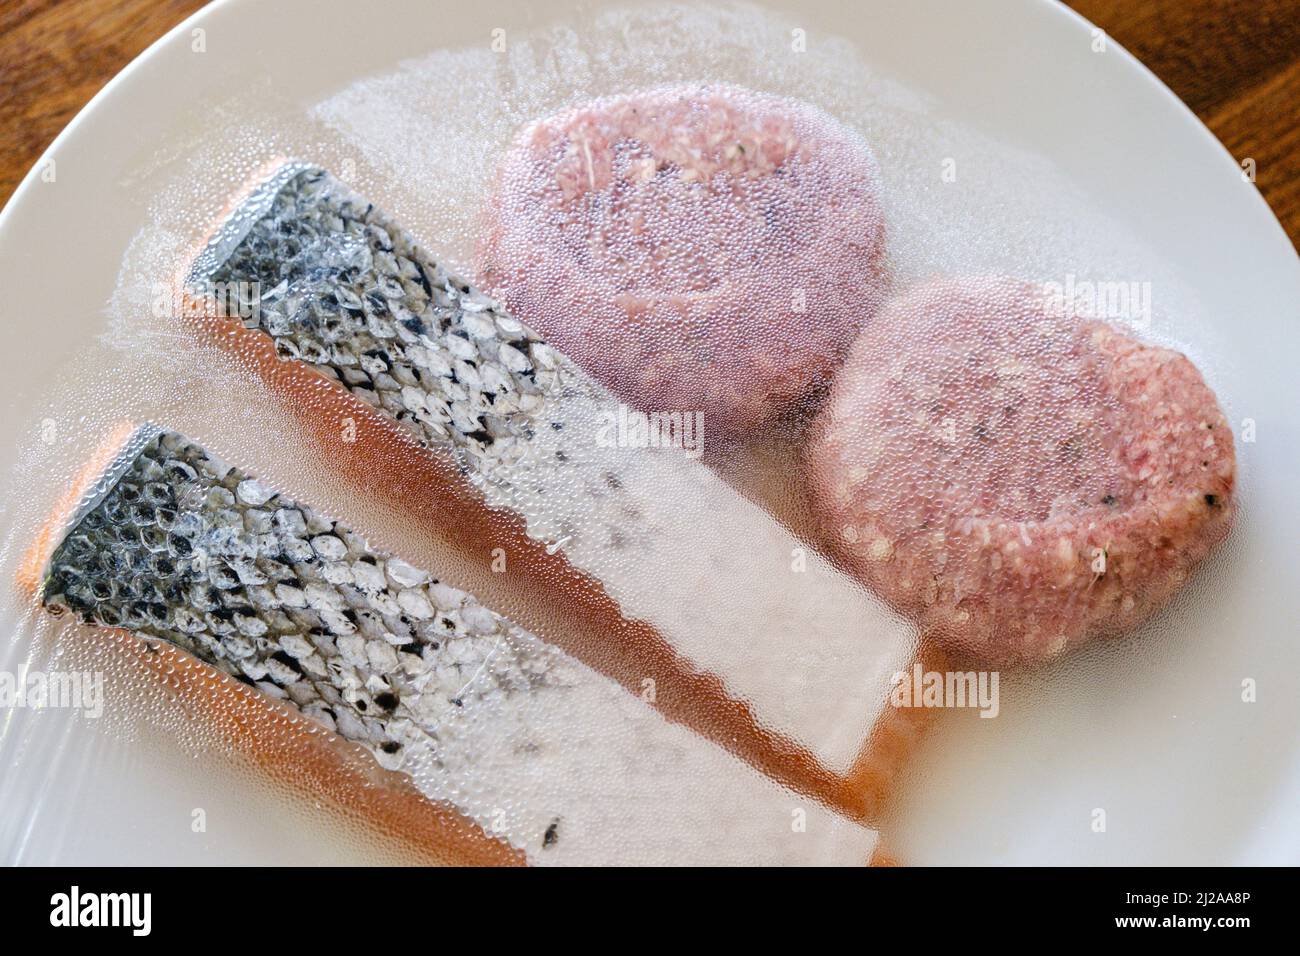 Une assiette de nourriture non cuite, incluant des filets de saumon et des hamburgers de bœuf prêts pour un barbecue. Banque D'Images